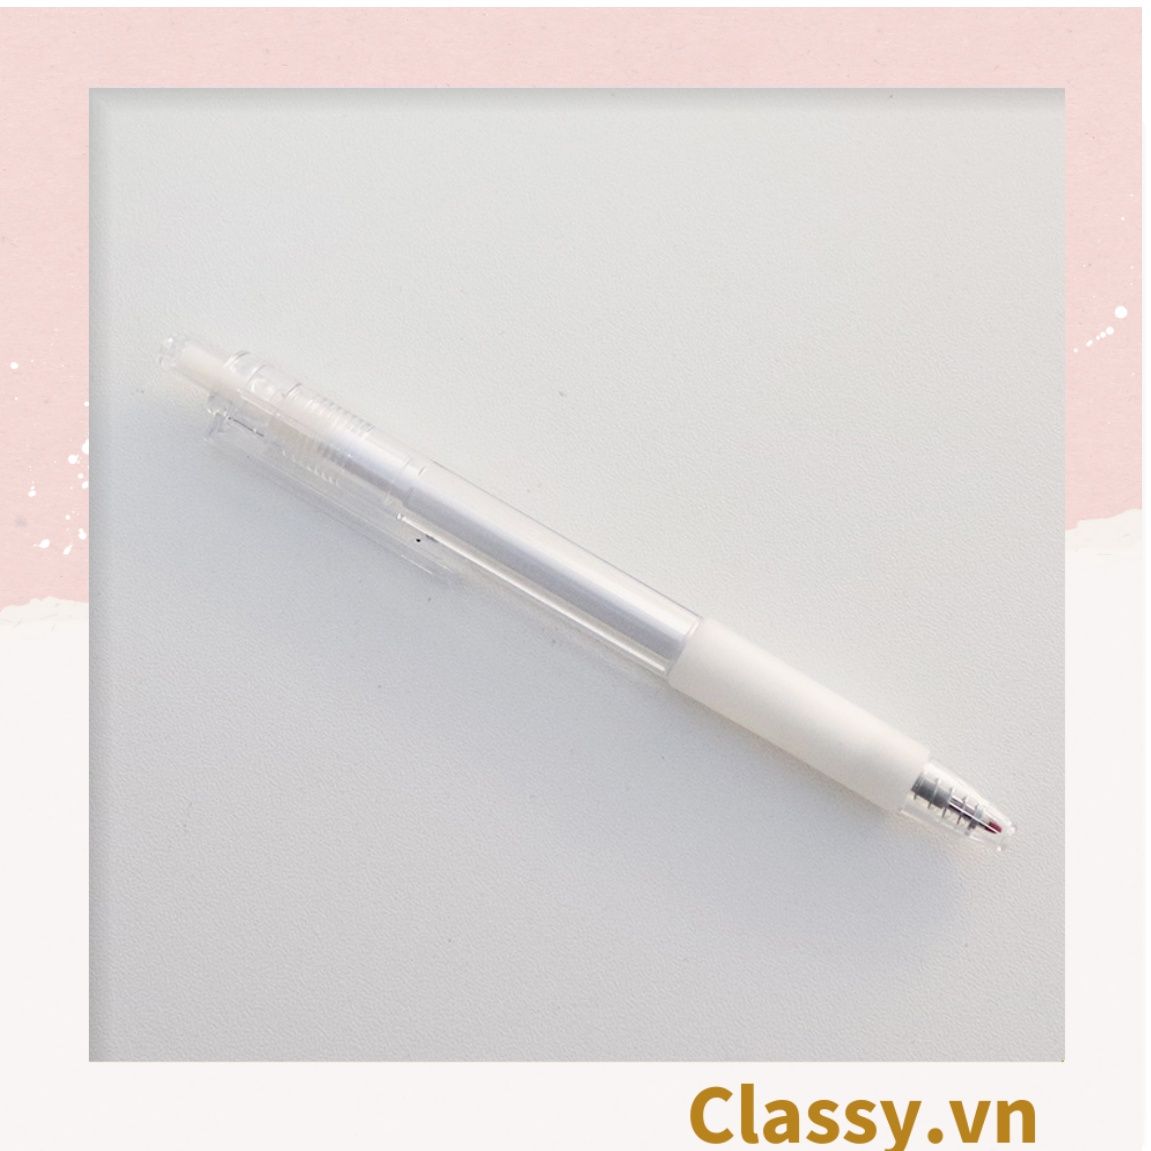 Classy Bút bi mực đen trơn màu cơ bản có miếng đệm tay giảm đau tay khi sử dụng lâu PK1650